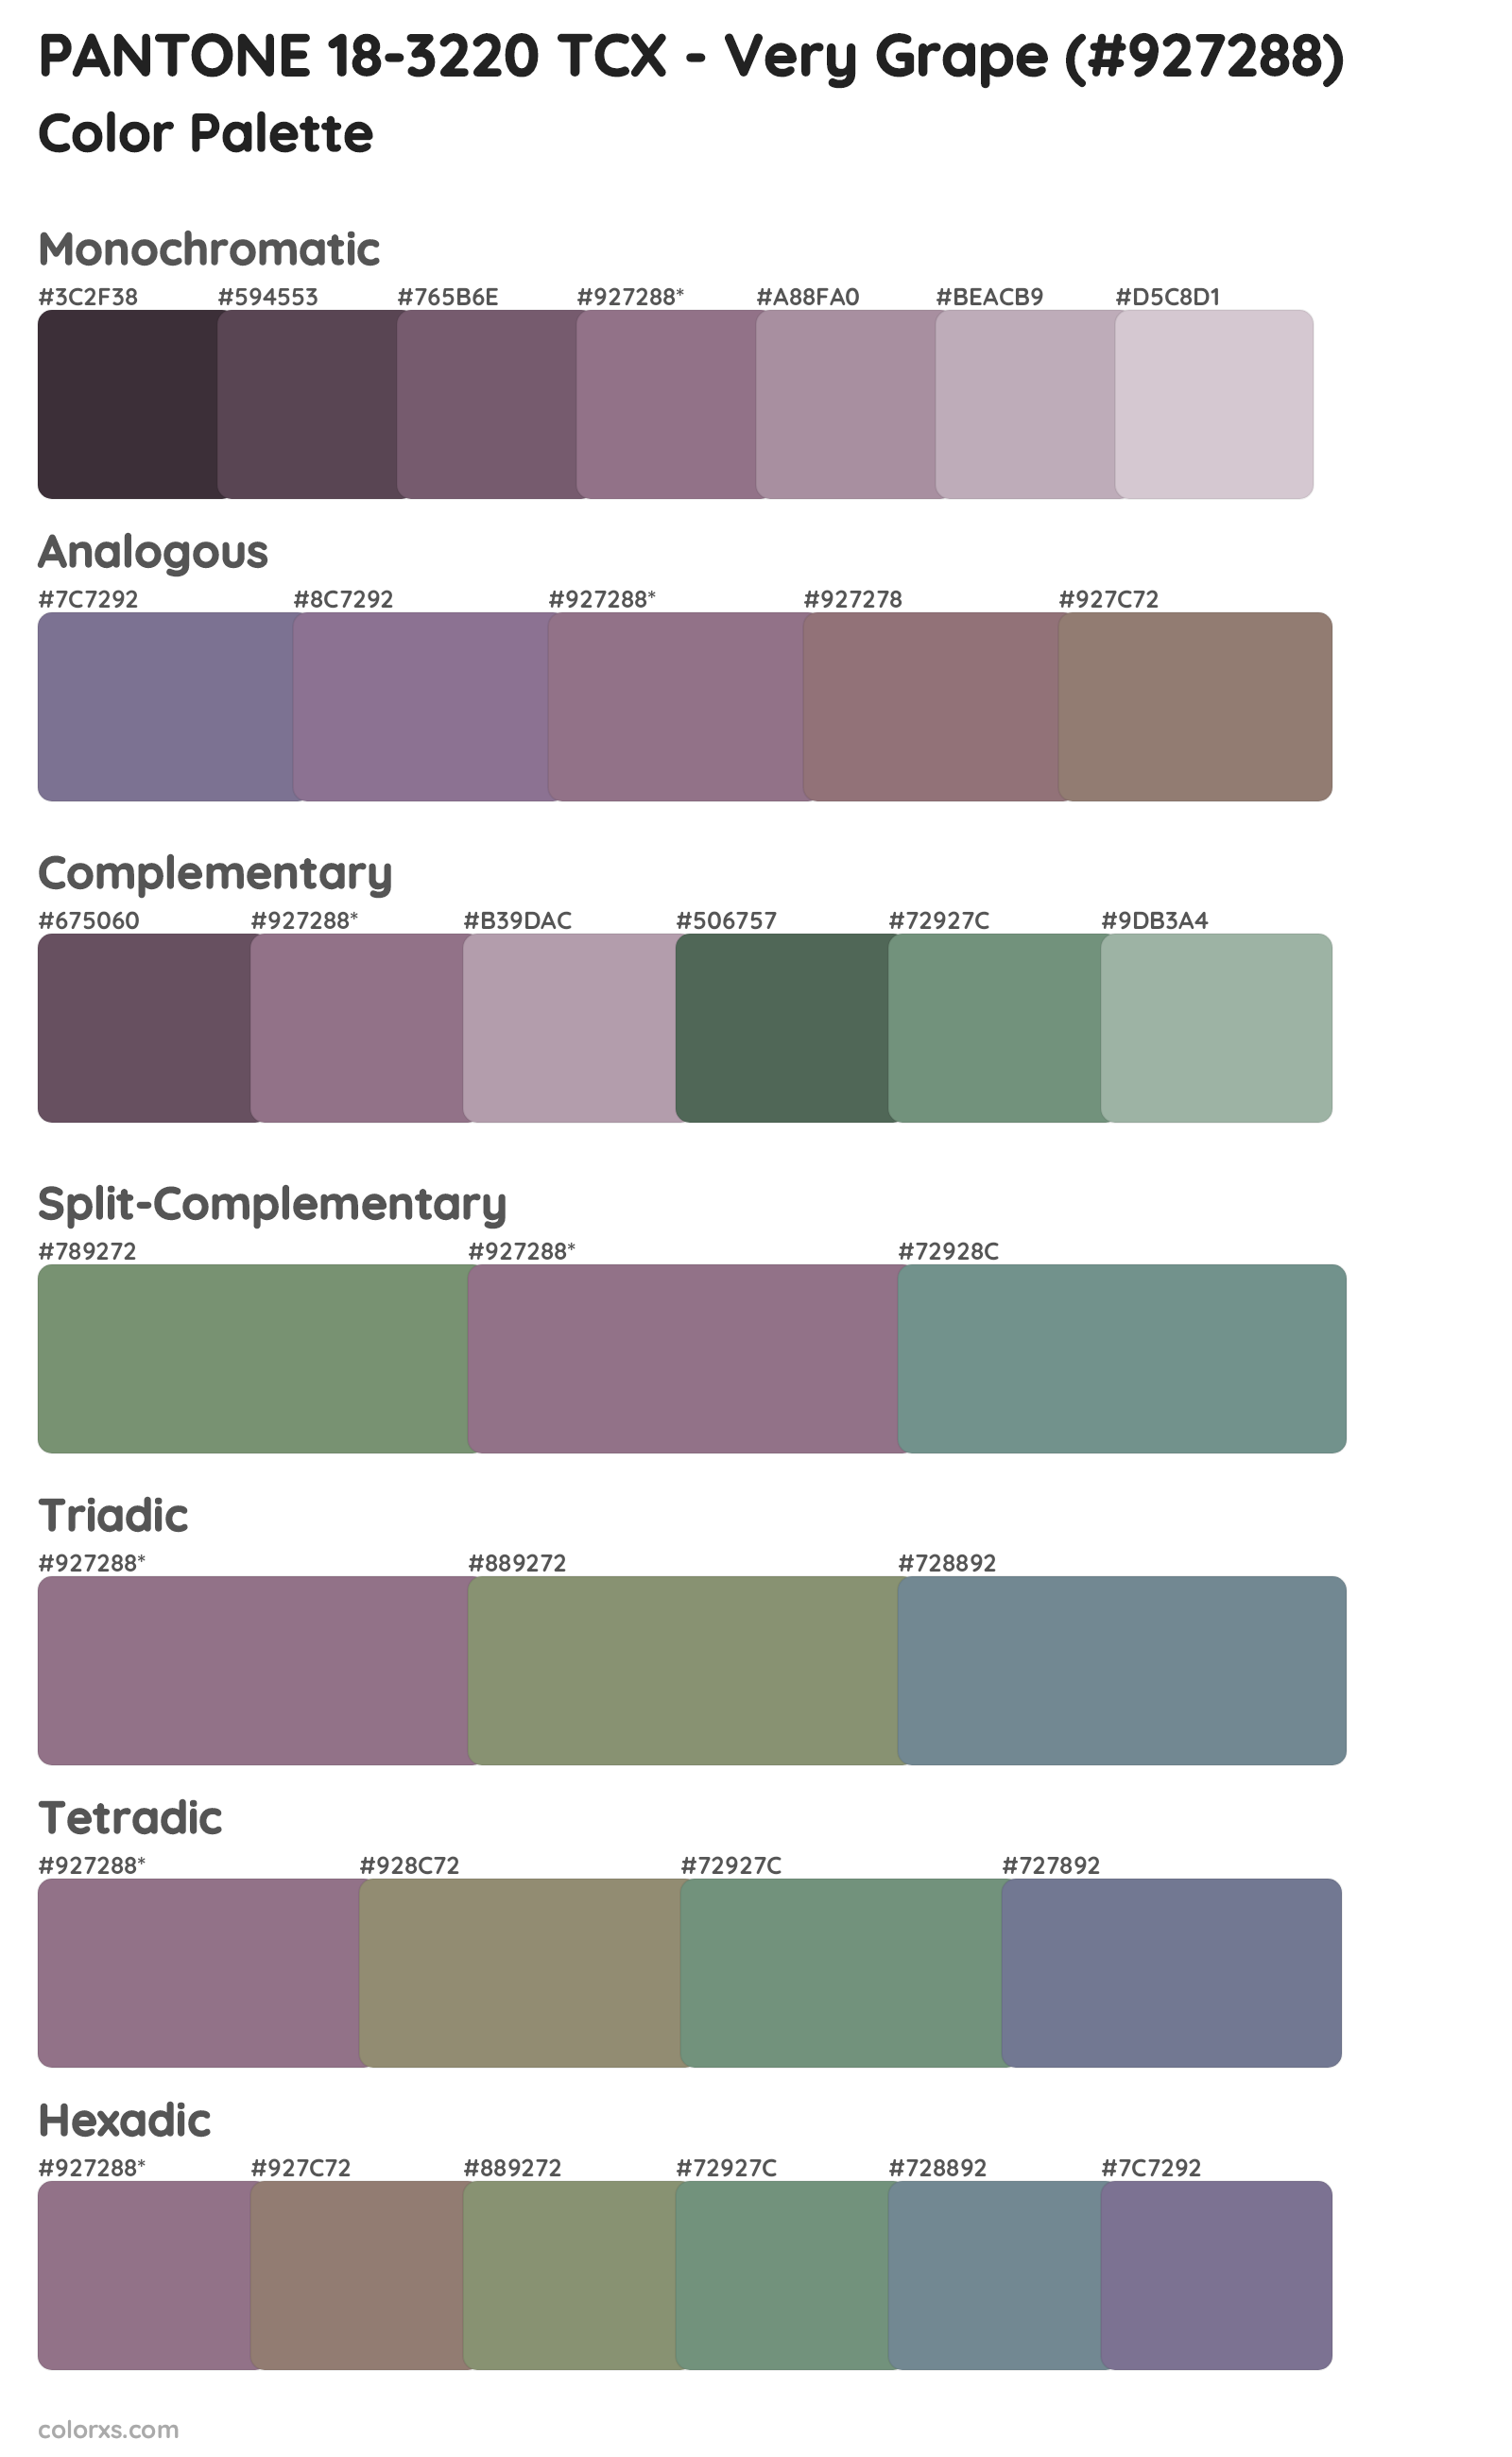 PANTONE 18-3220 TCX - Very Grape Color Scheme Palettes